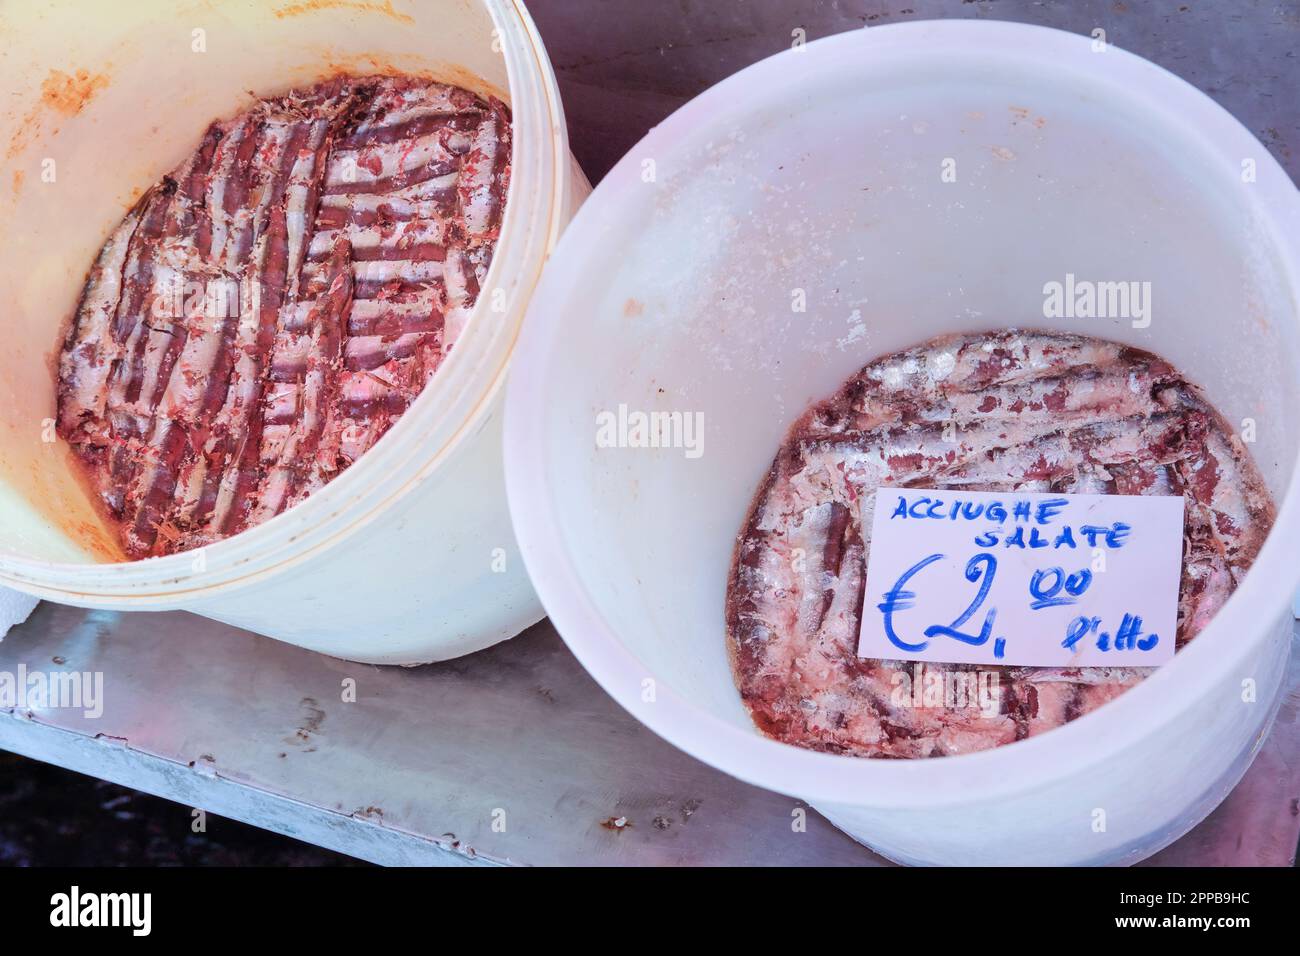 Seaux contenant des anchois salés (Engraulis encrasicolus) dans le marché du poisson de Catane, sicile, Italie Banque D'Images